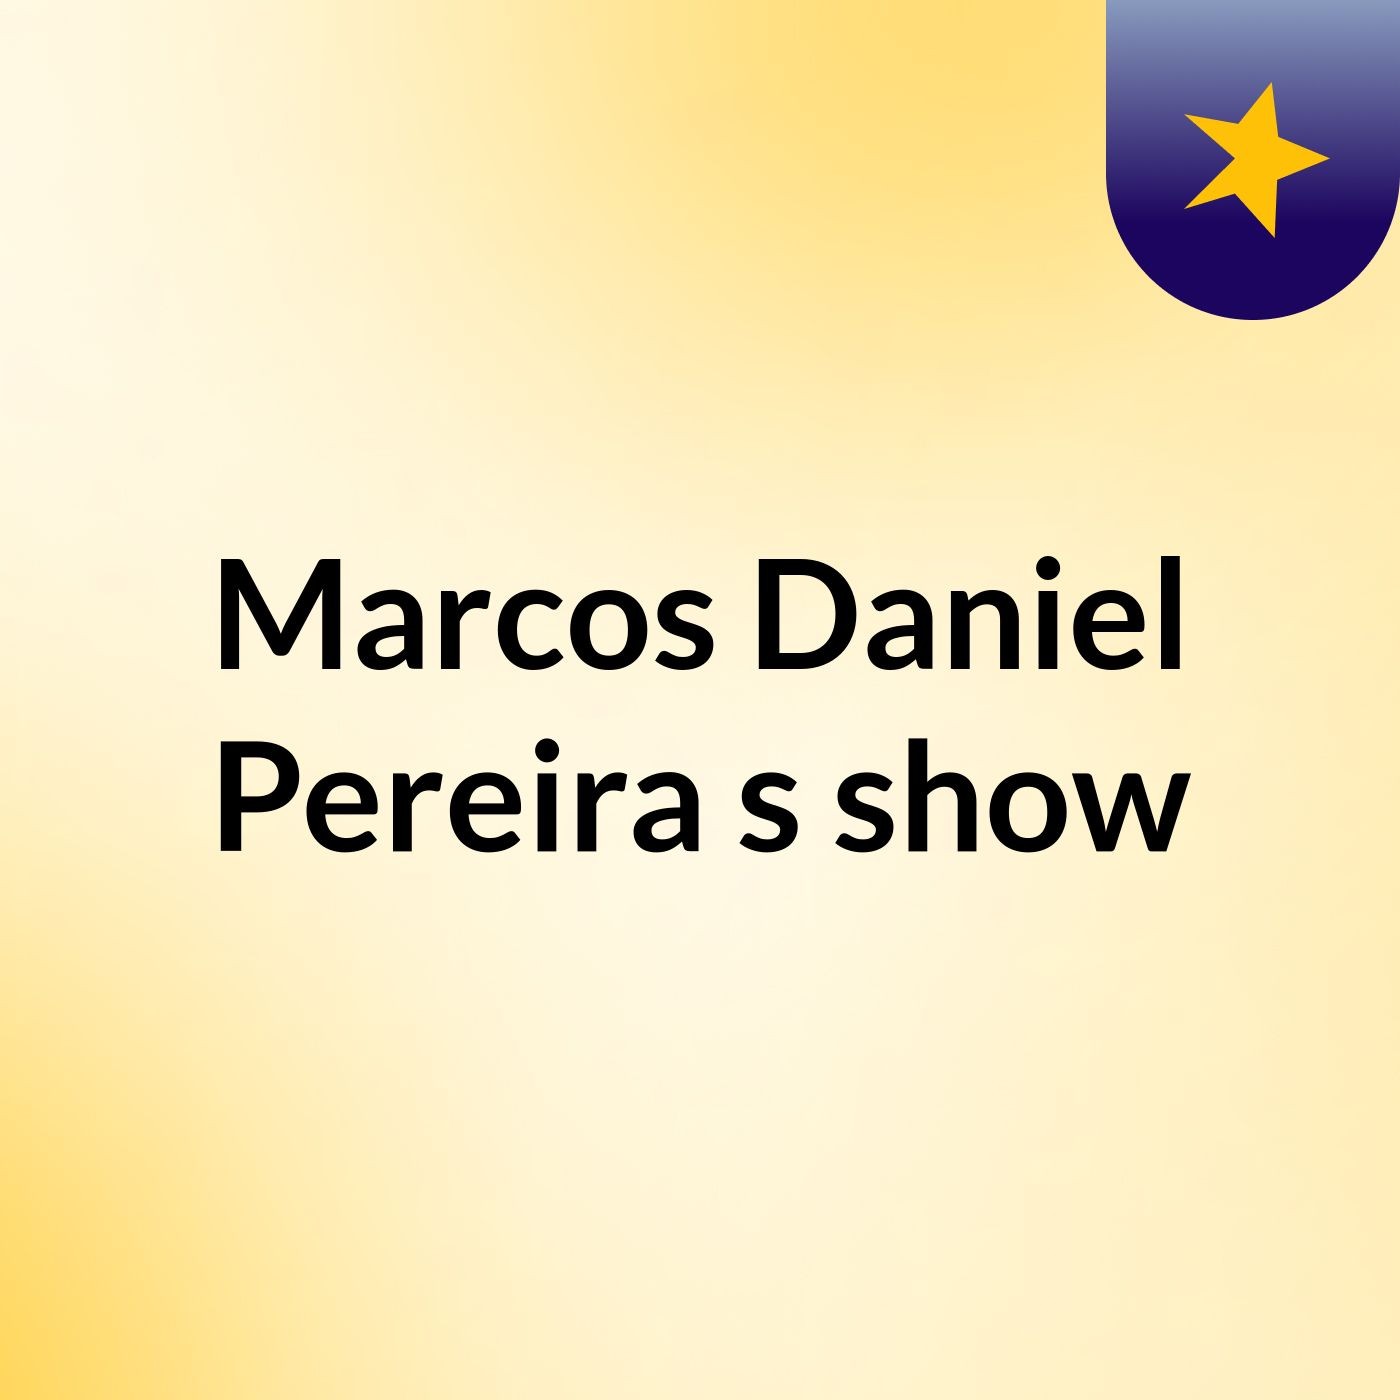 Marcos Daniel Pereira's show